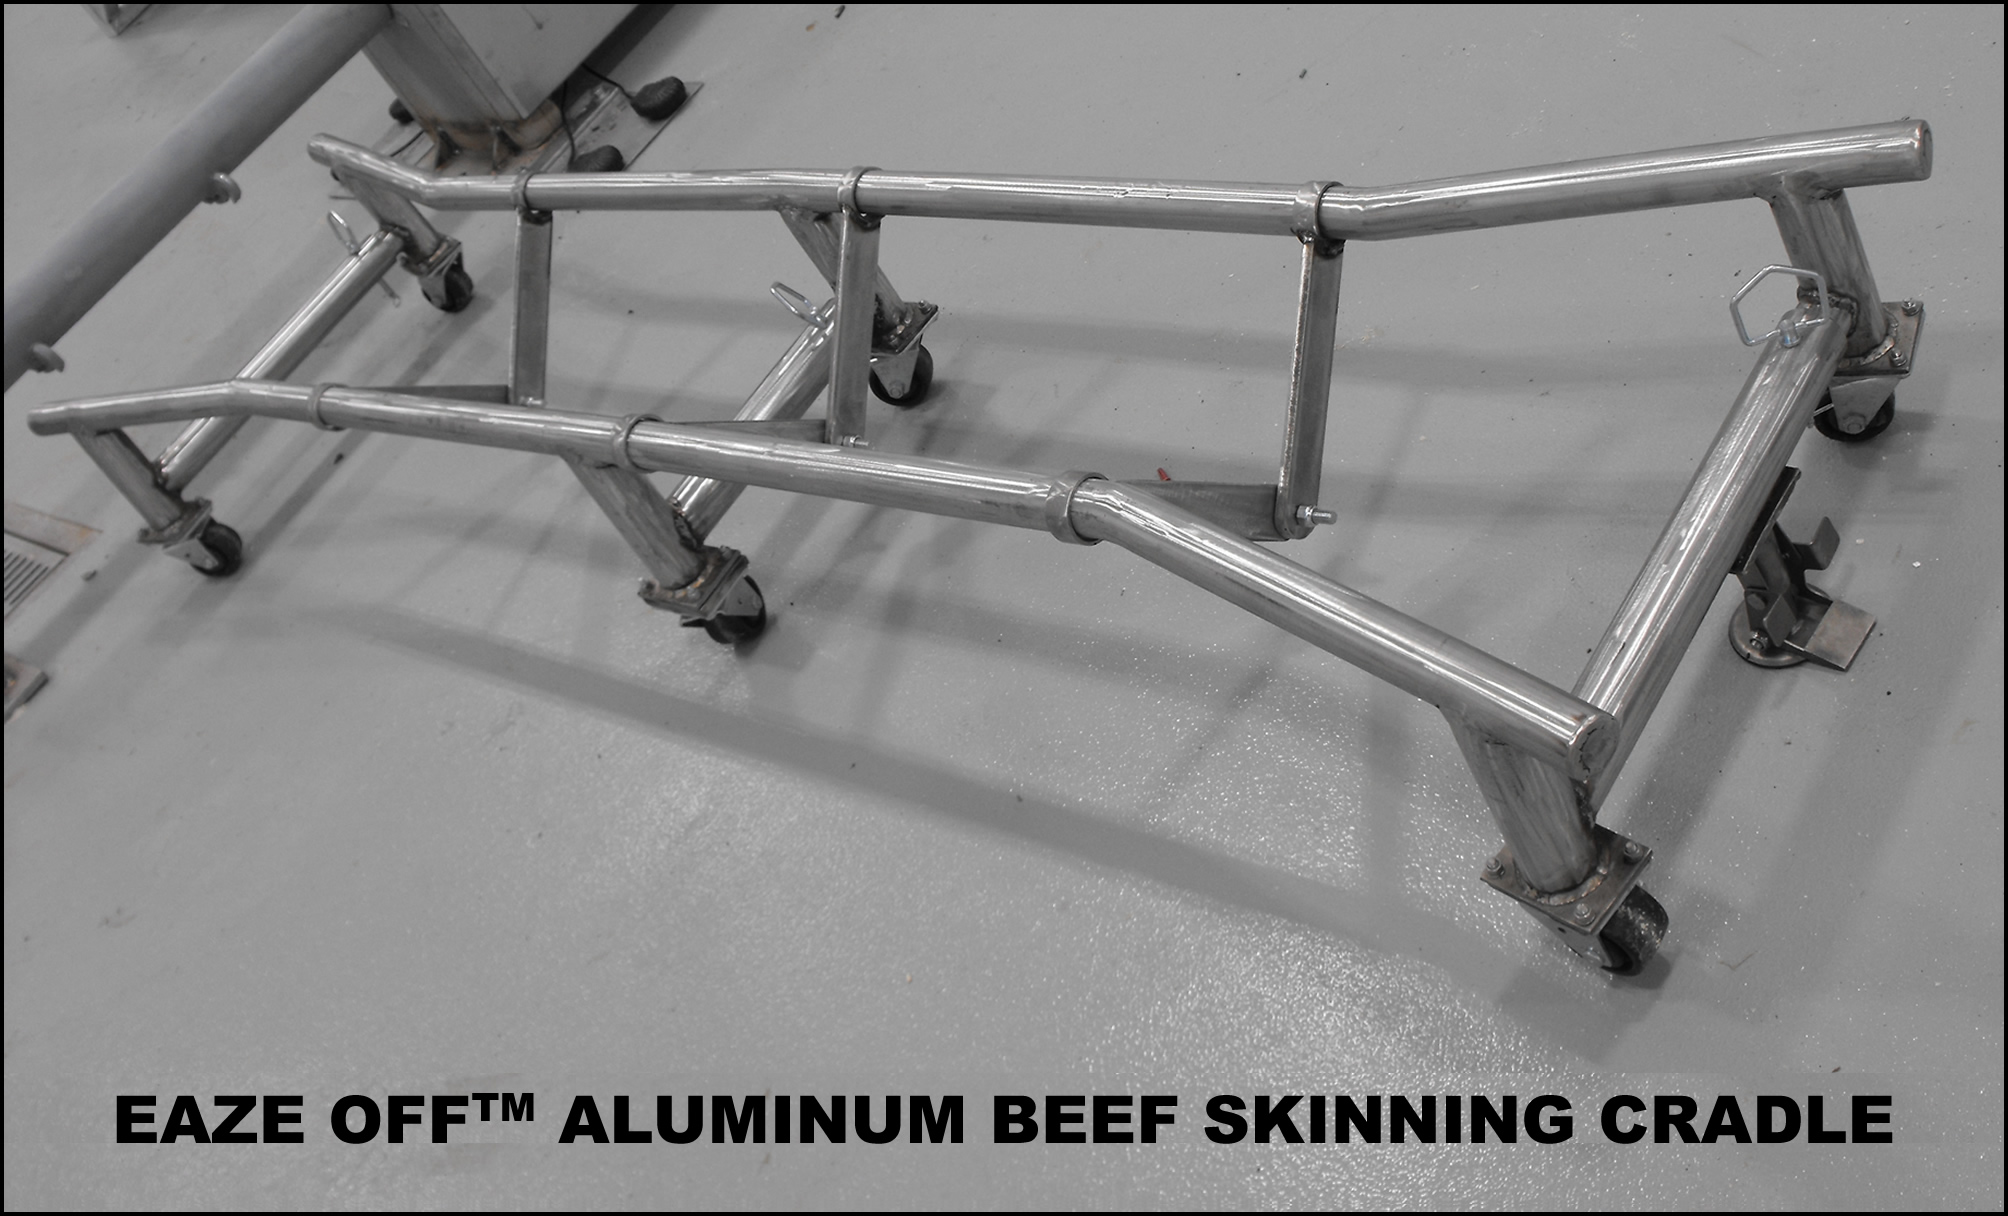 EAZE OFF Aluminum Beef Skinning Cradle